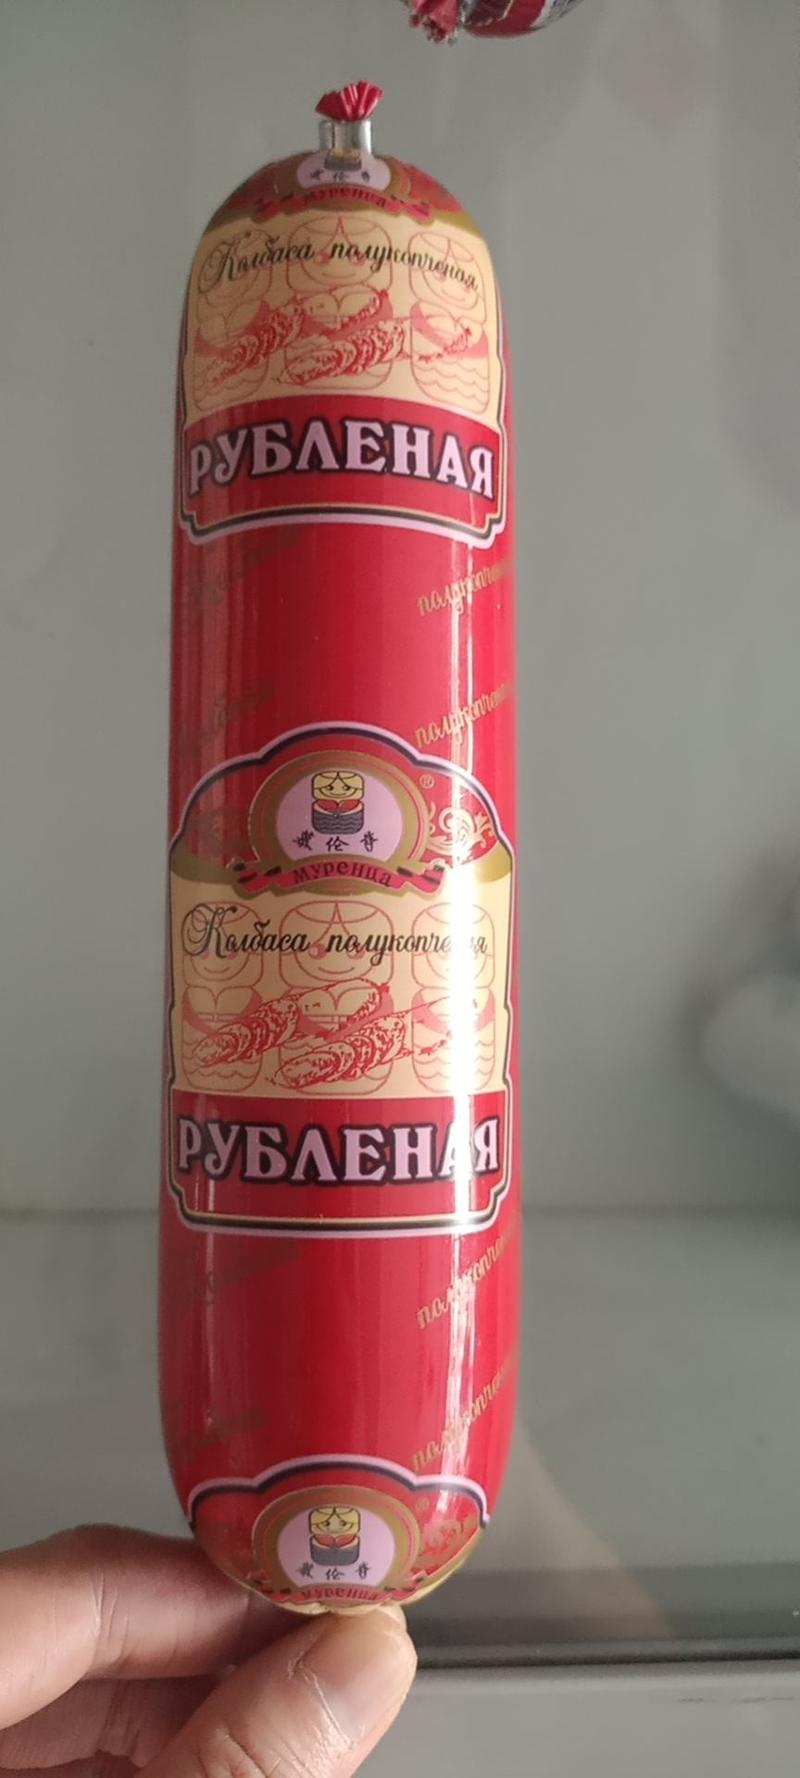 俄罗斯风味卢布肠，打开满满的肉清晰可见。